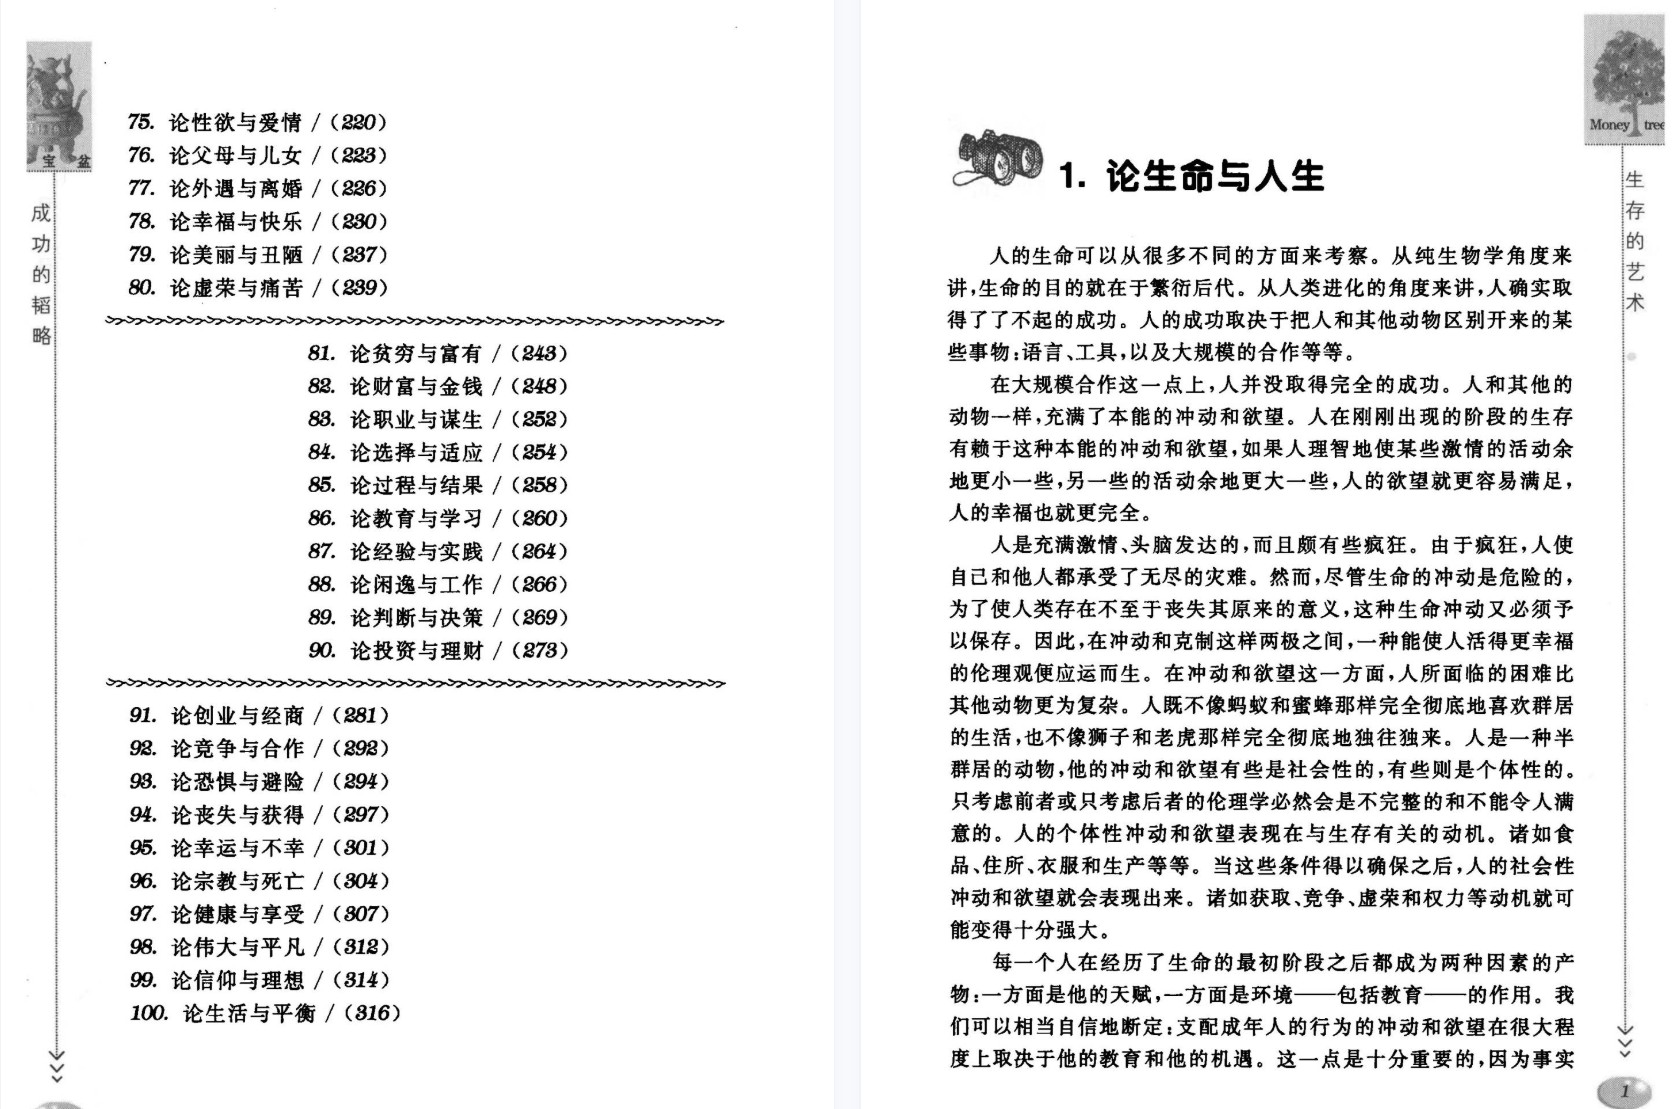 《人生百智——智圆行方 不战而胜》「百度网盘下载」PDF 电子书插图3